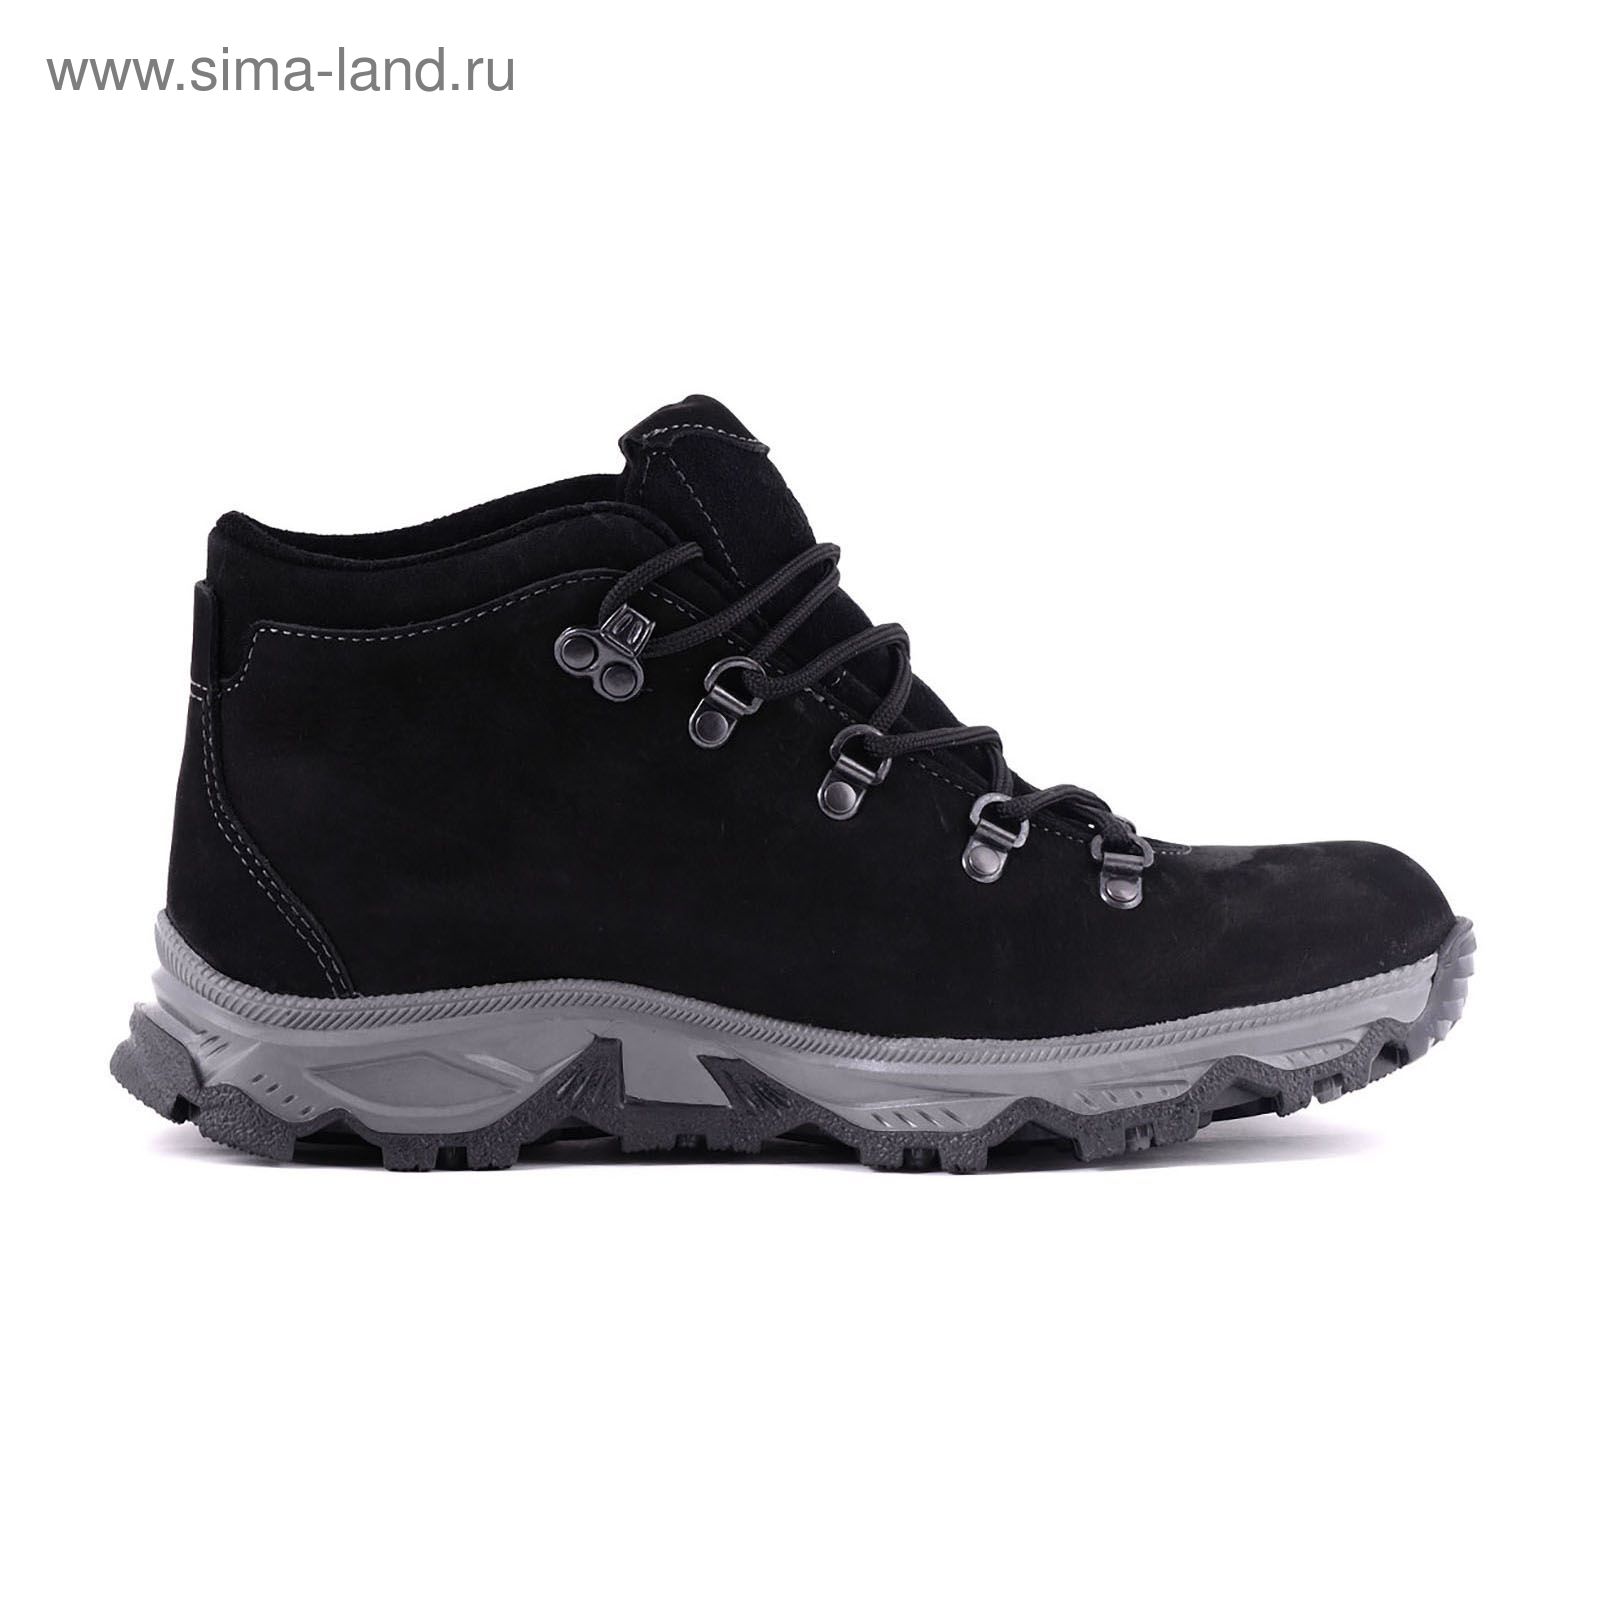 Ботинки TREK Анды 95-46 мех (нубук черный) (р.41)